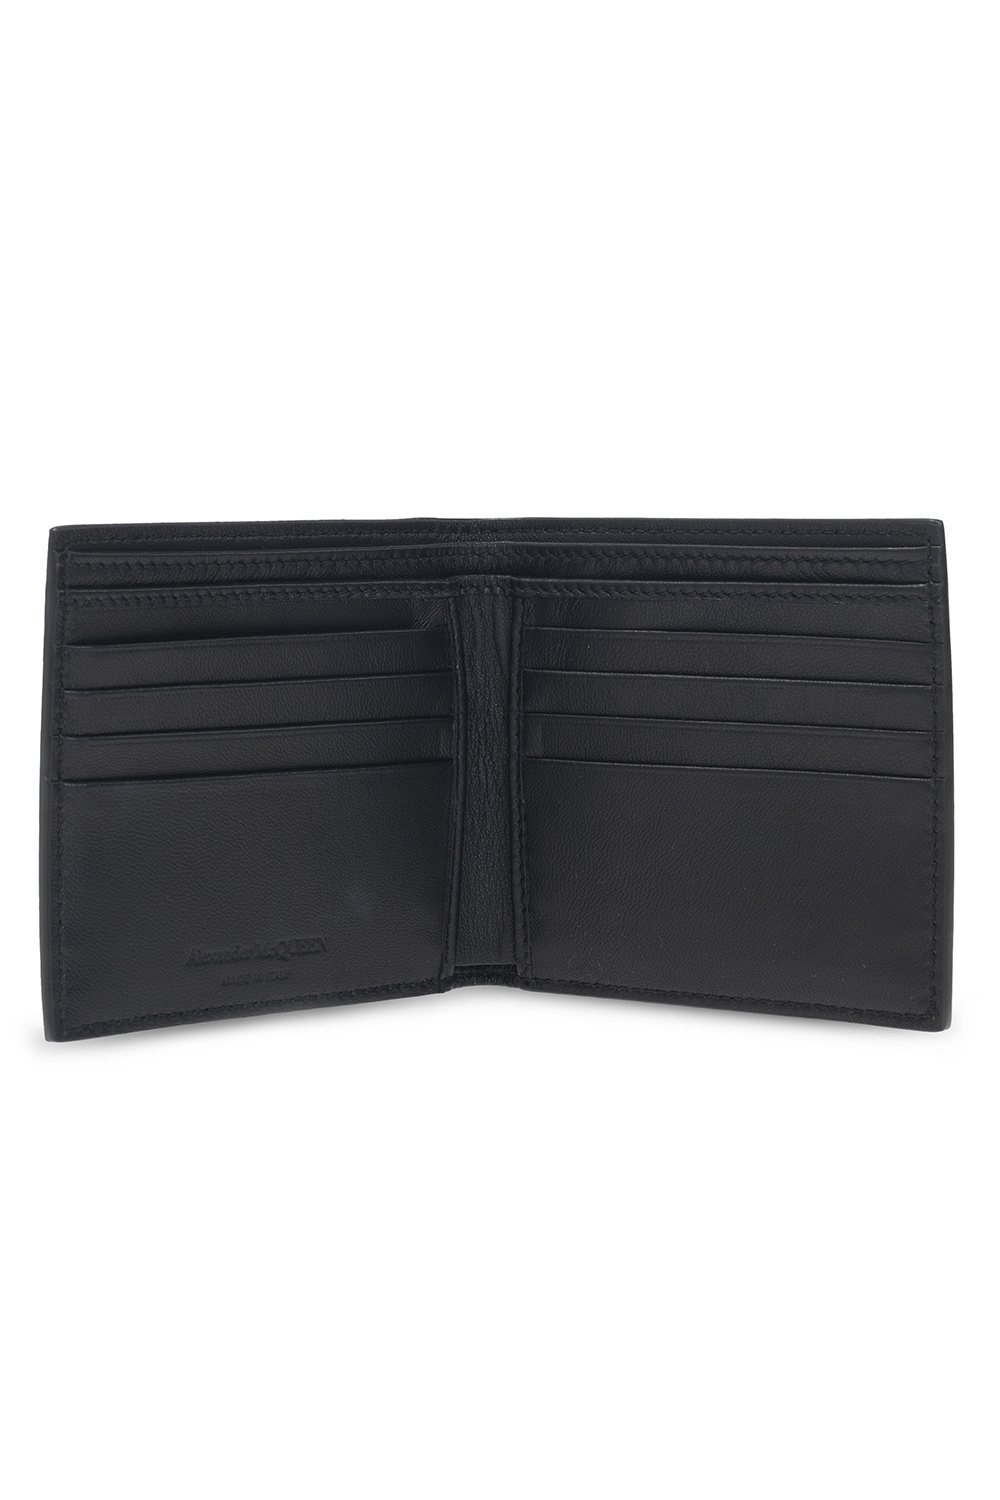 Alexander McQueen Leather wallet | Men's Accessories | Vitkac